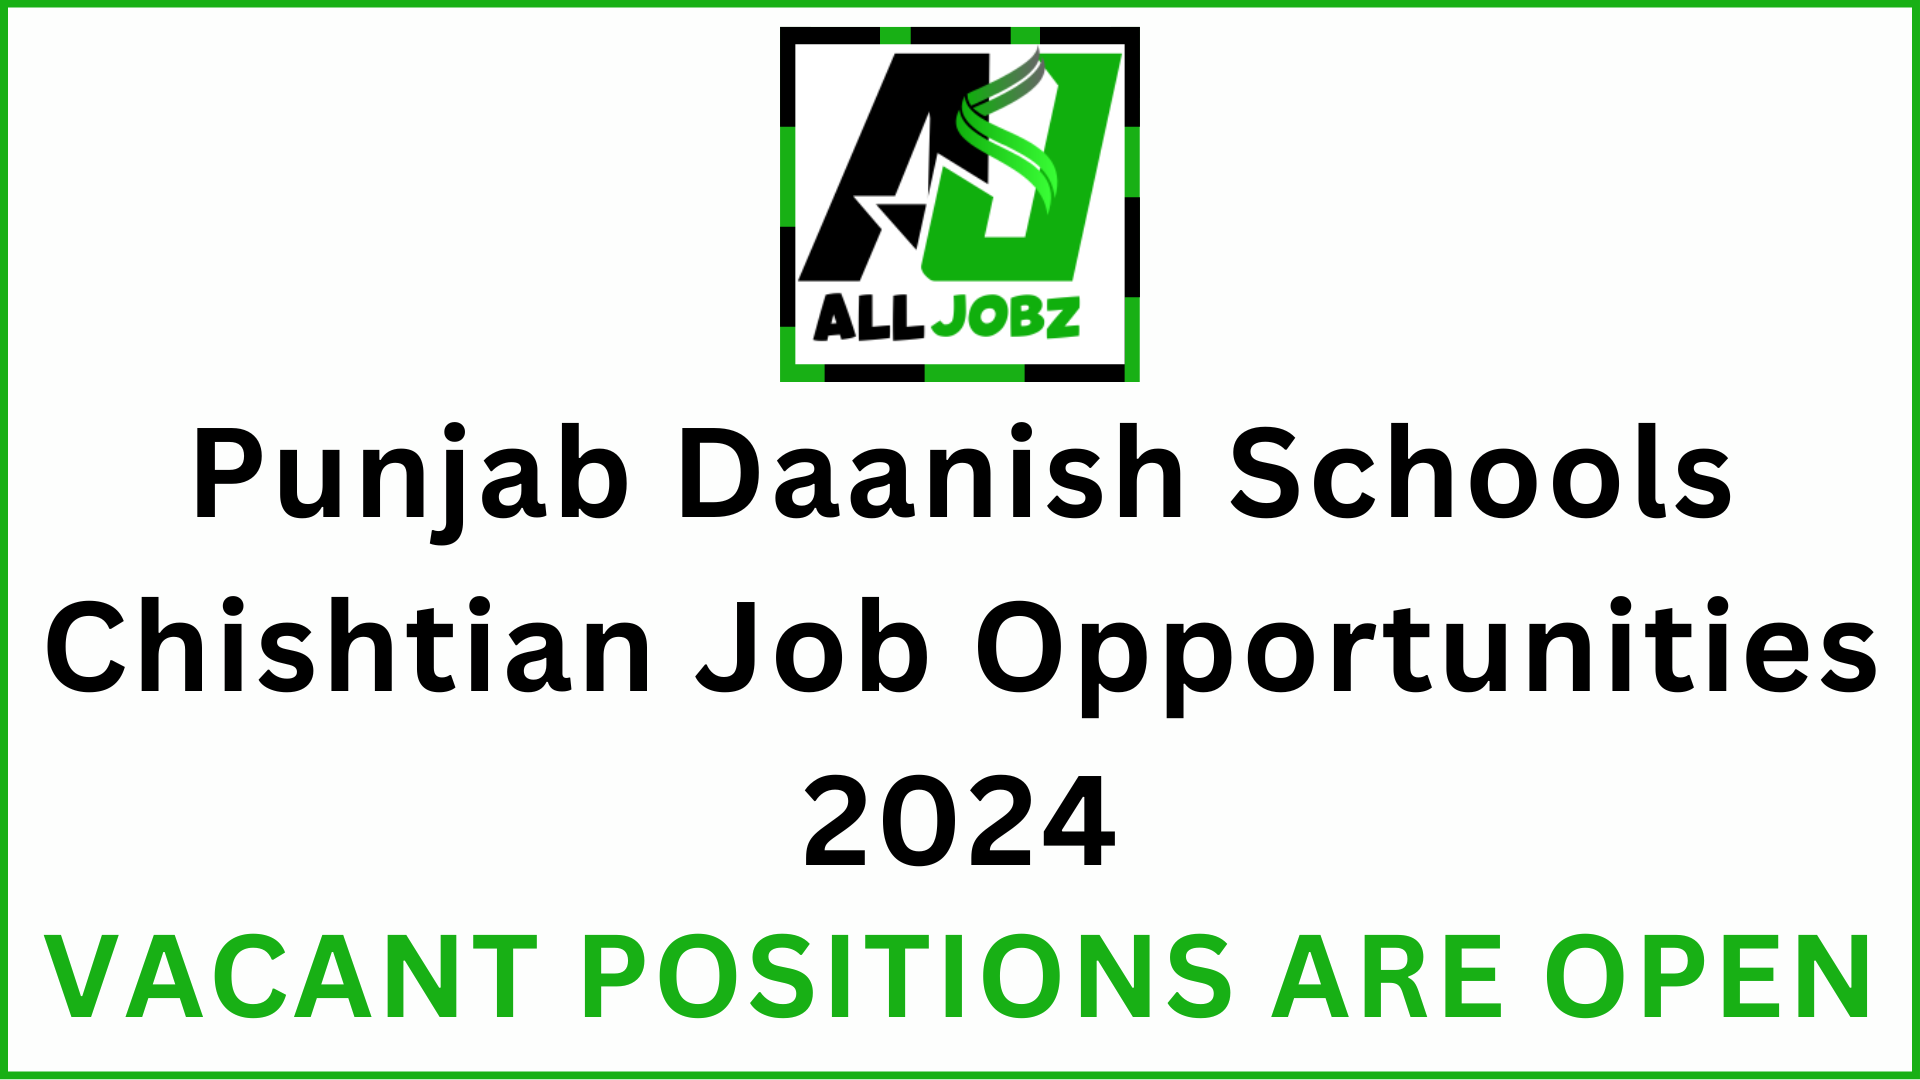 Danish School Jobs For Female, Danish School Teacher Salary, Punjab Daanish Schools Chishtian Jobs For Teachers, Danish School Jobs Advertisement,